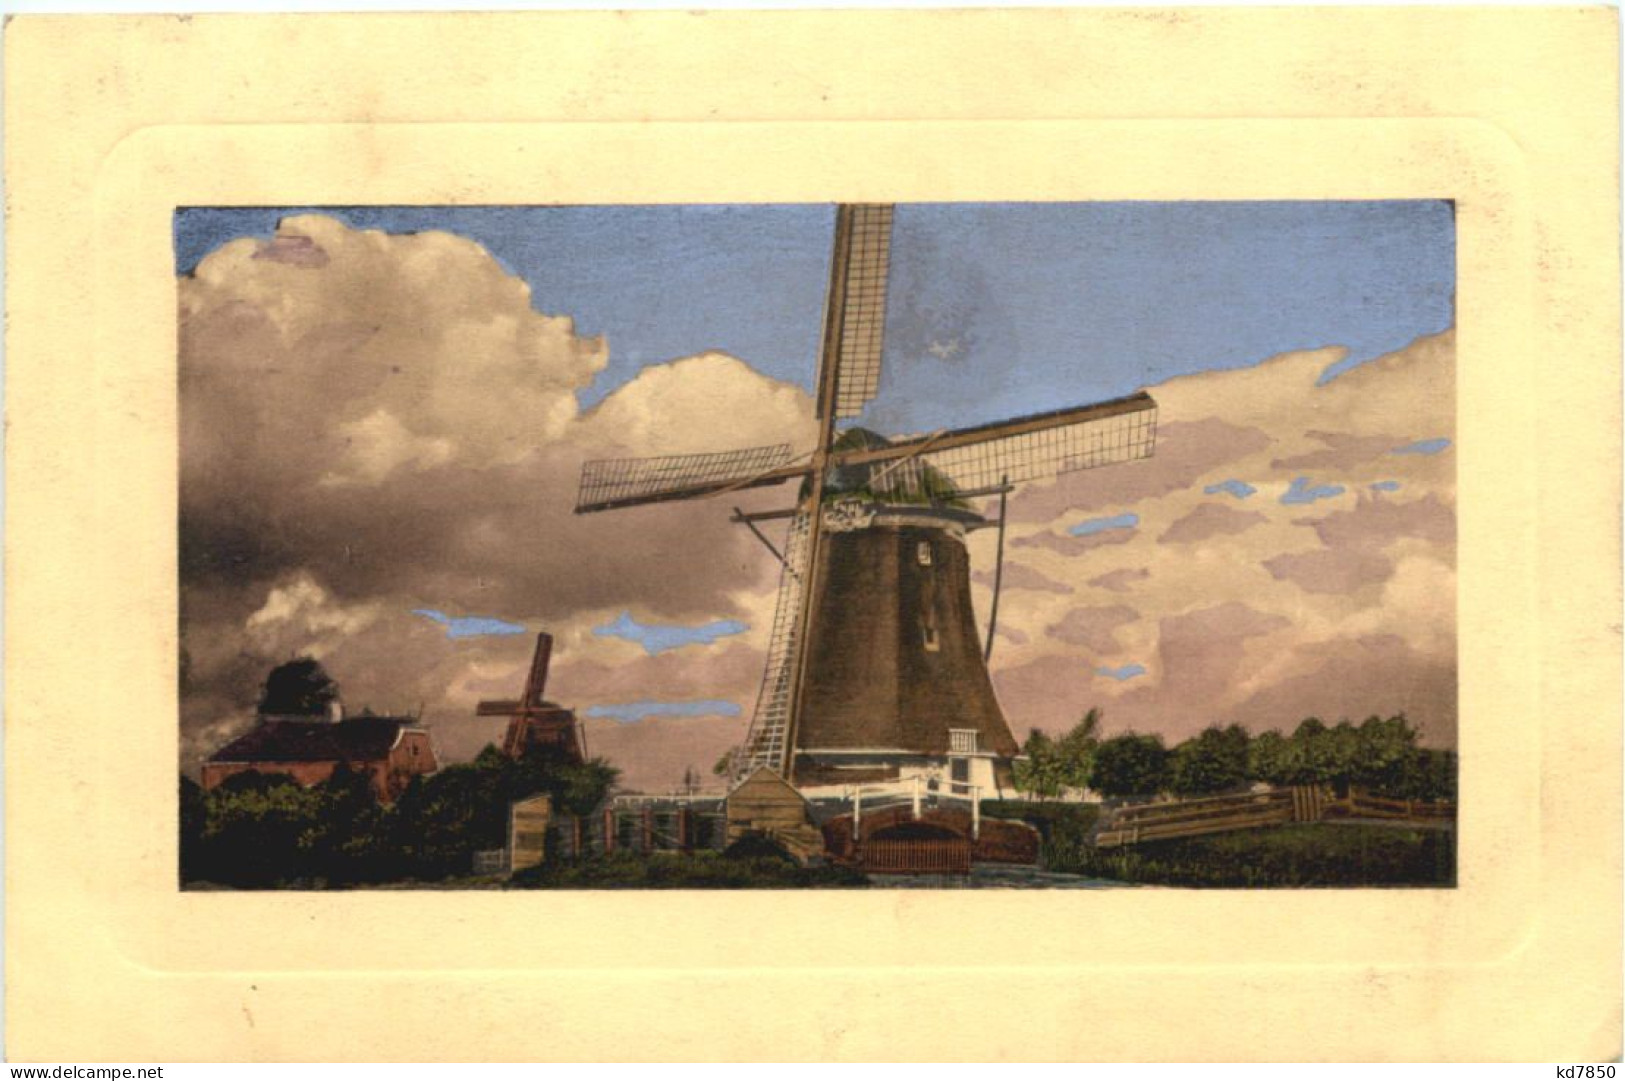 Windmühle - Windmills